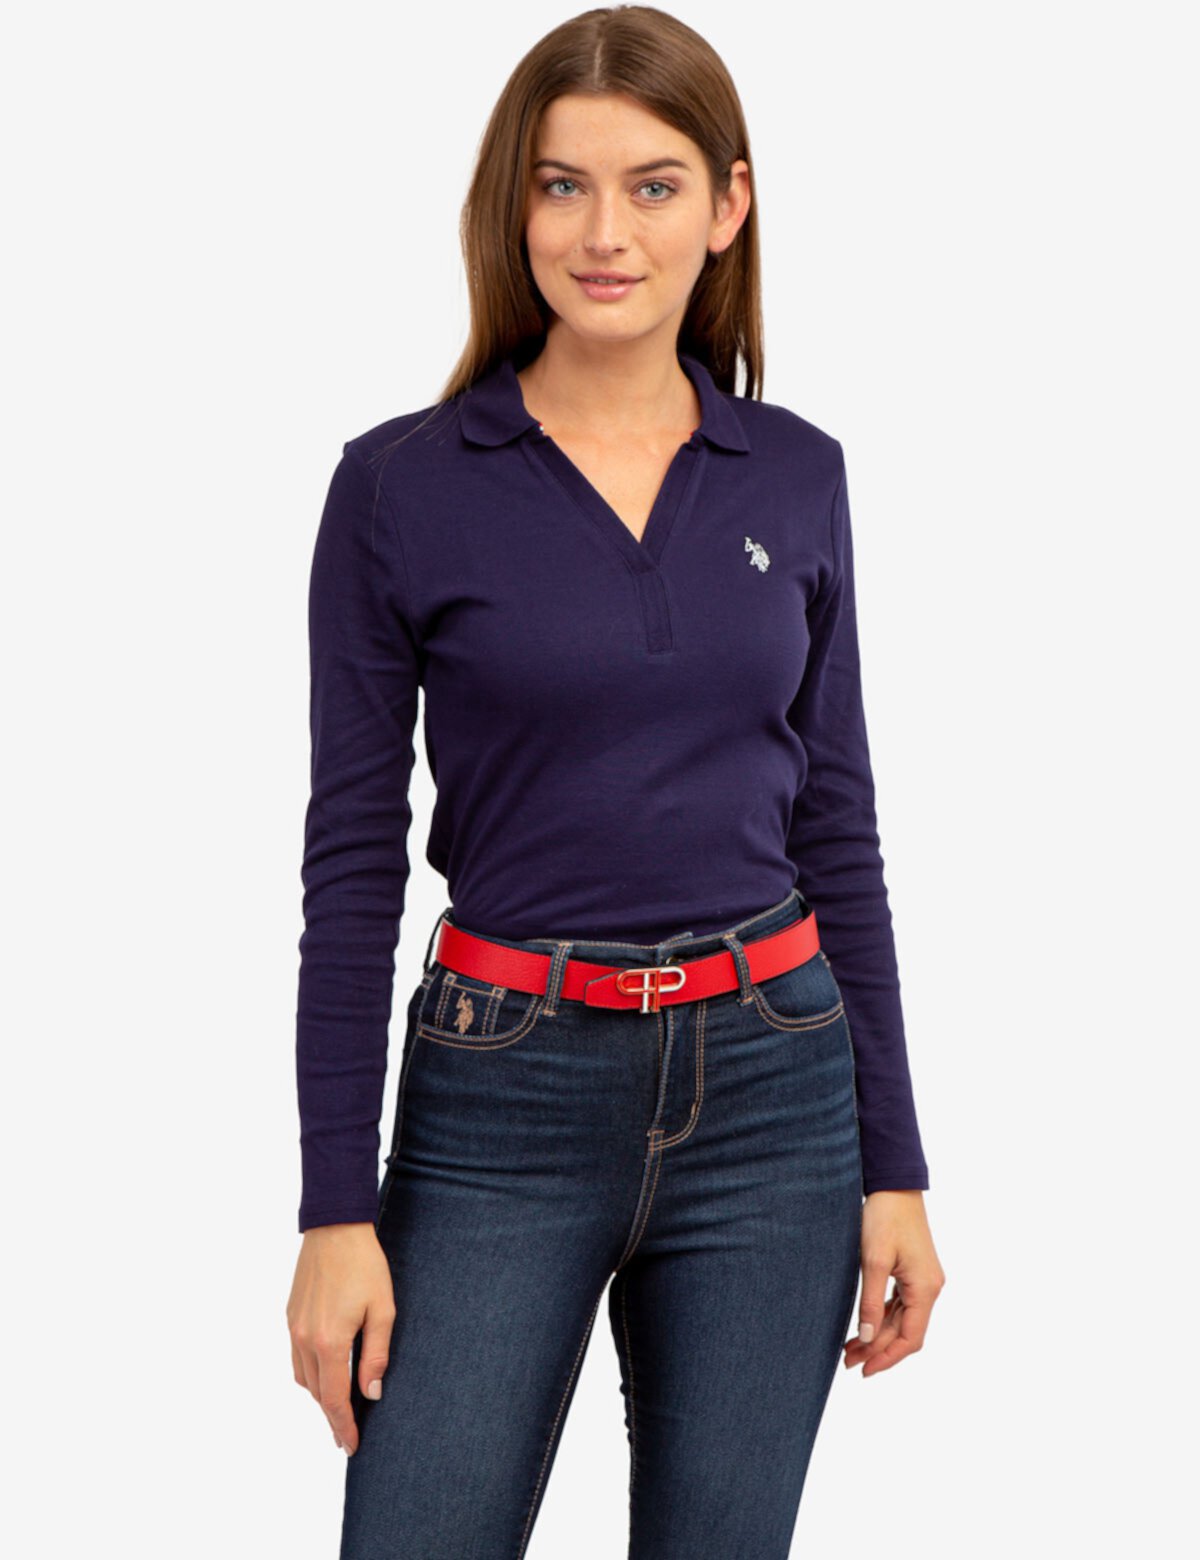 Женская рубашка-поло с длинным рукавом и разрезом на шее U.S. POLO ASSN. U.S. POLO ASSN.